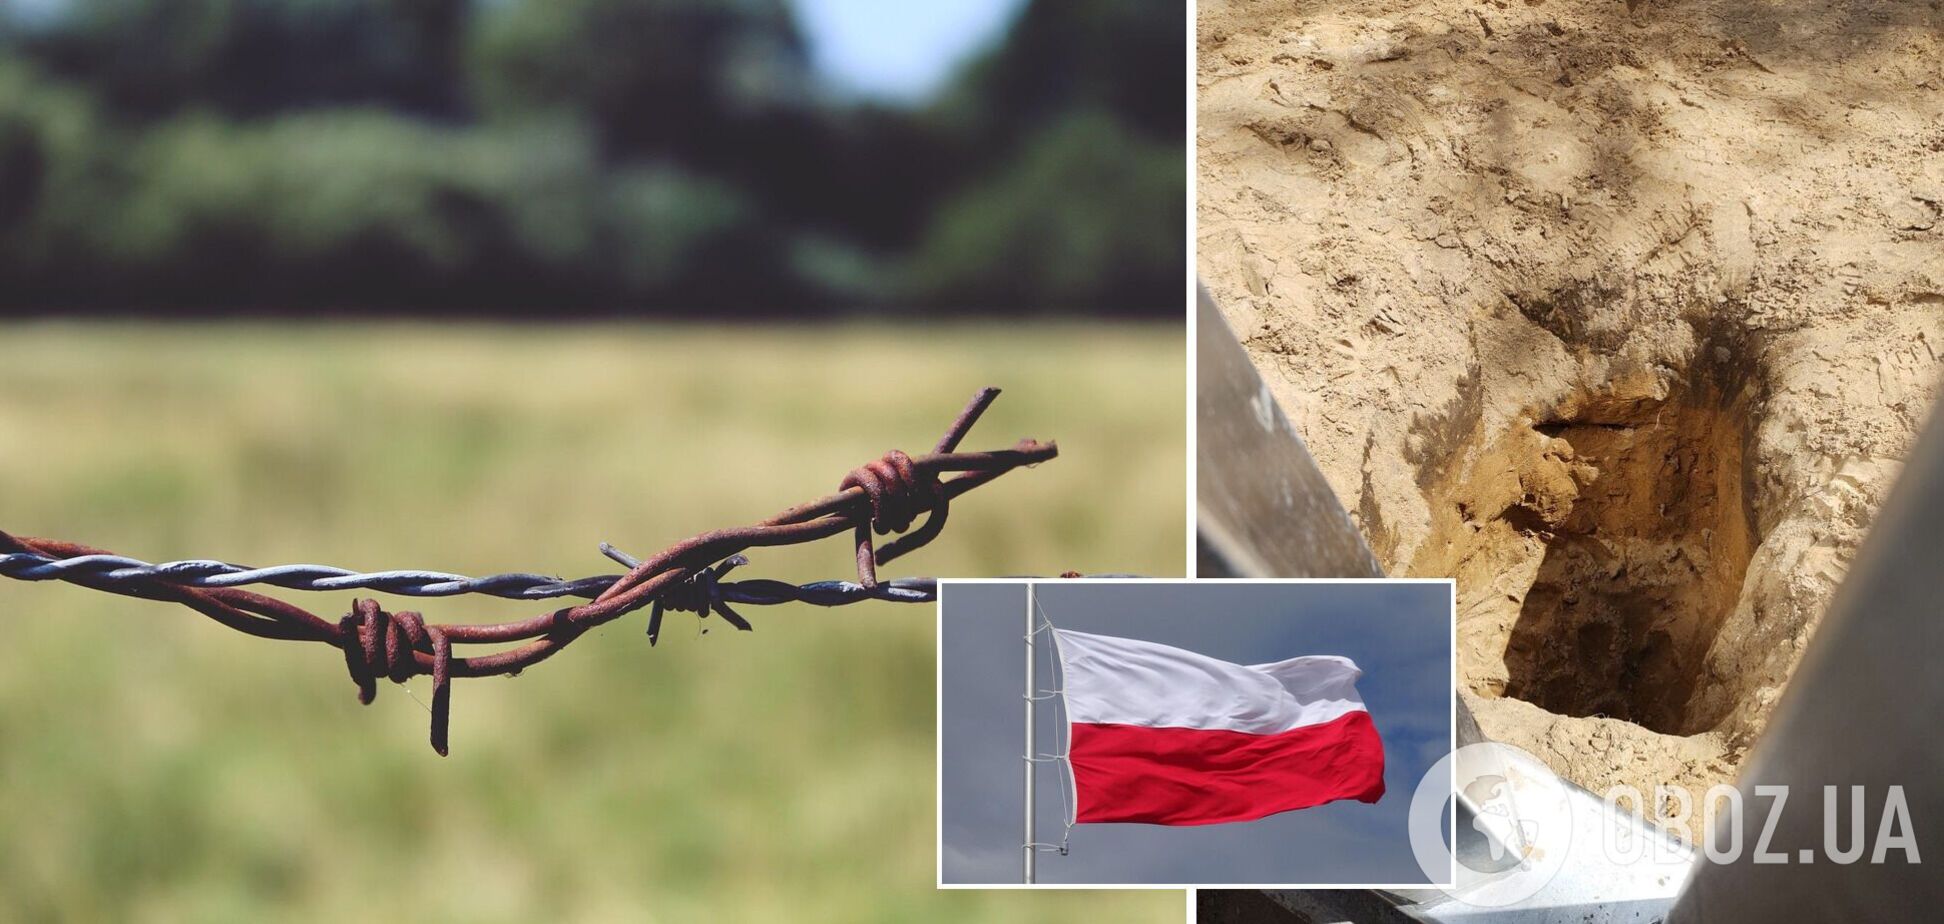 Беларуские военные совершили подкоп под забором на границе с Польшей: выяснились подробности. Фото